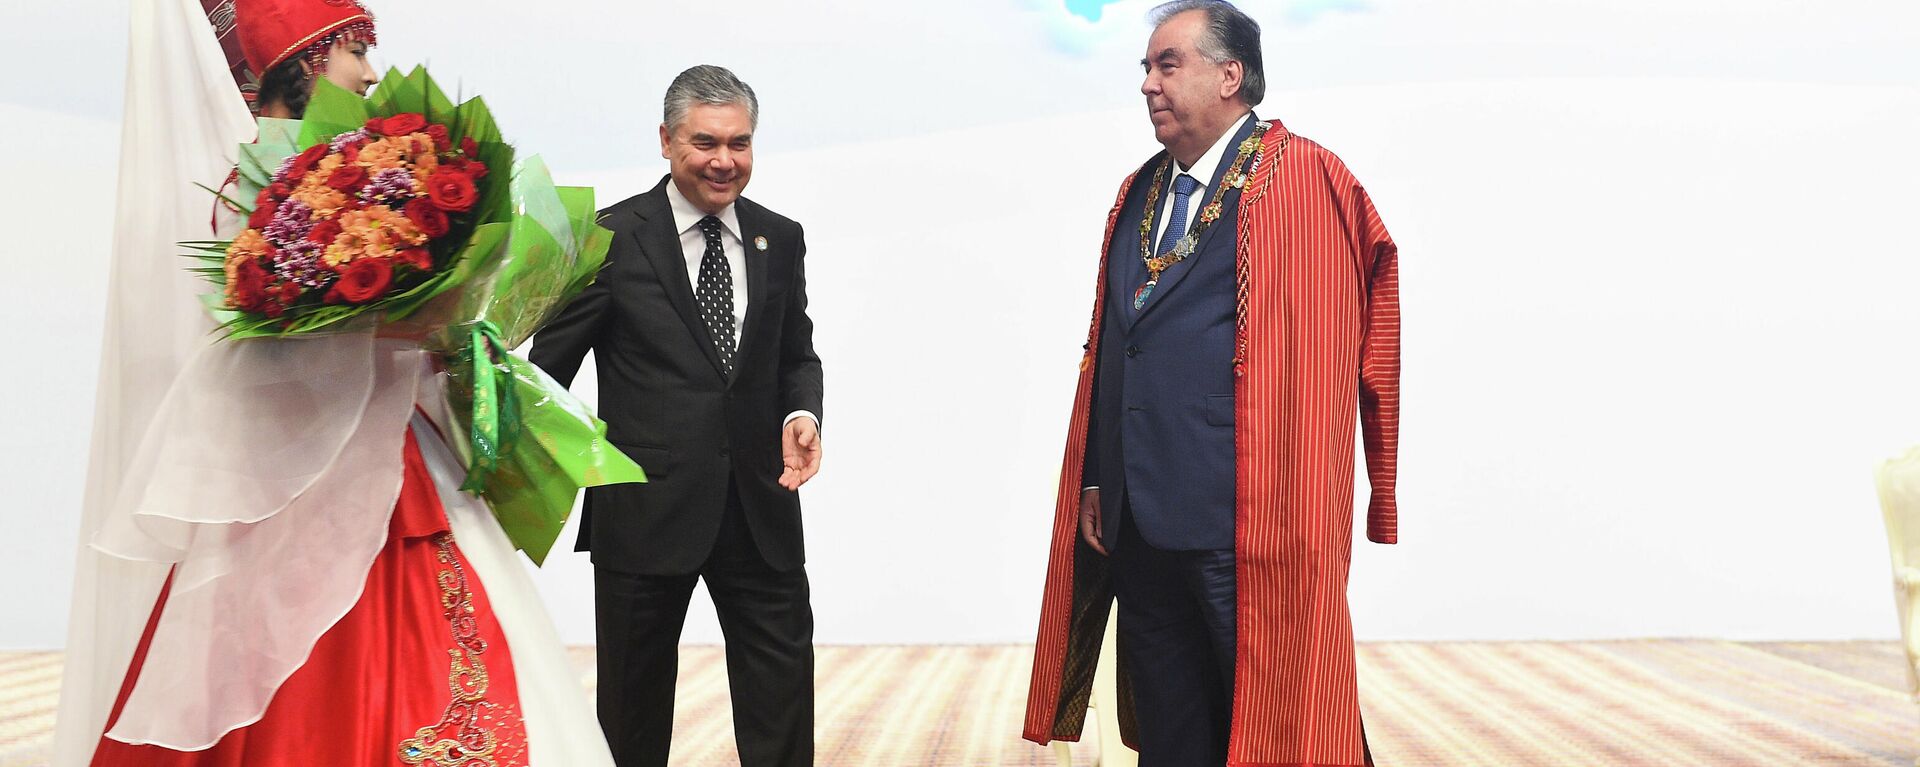 Почетная медаль глав государств Центральной Азии была вручена Президенту Республики Таджикистан Эмомали Рахмону - Sputnik Таджикистан, 1920, 06.08.2021